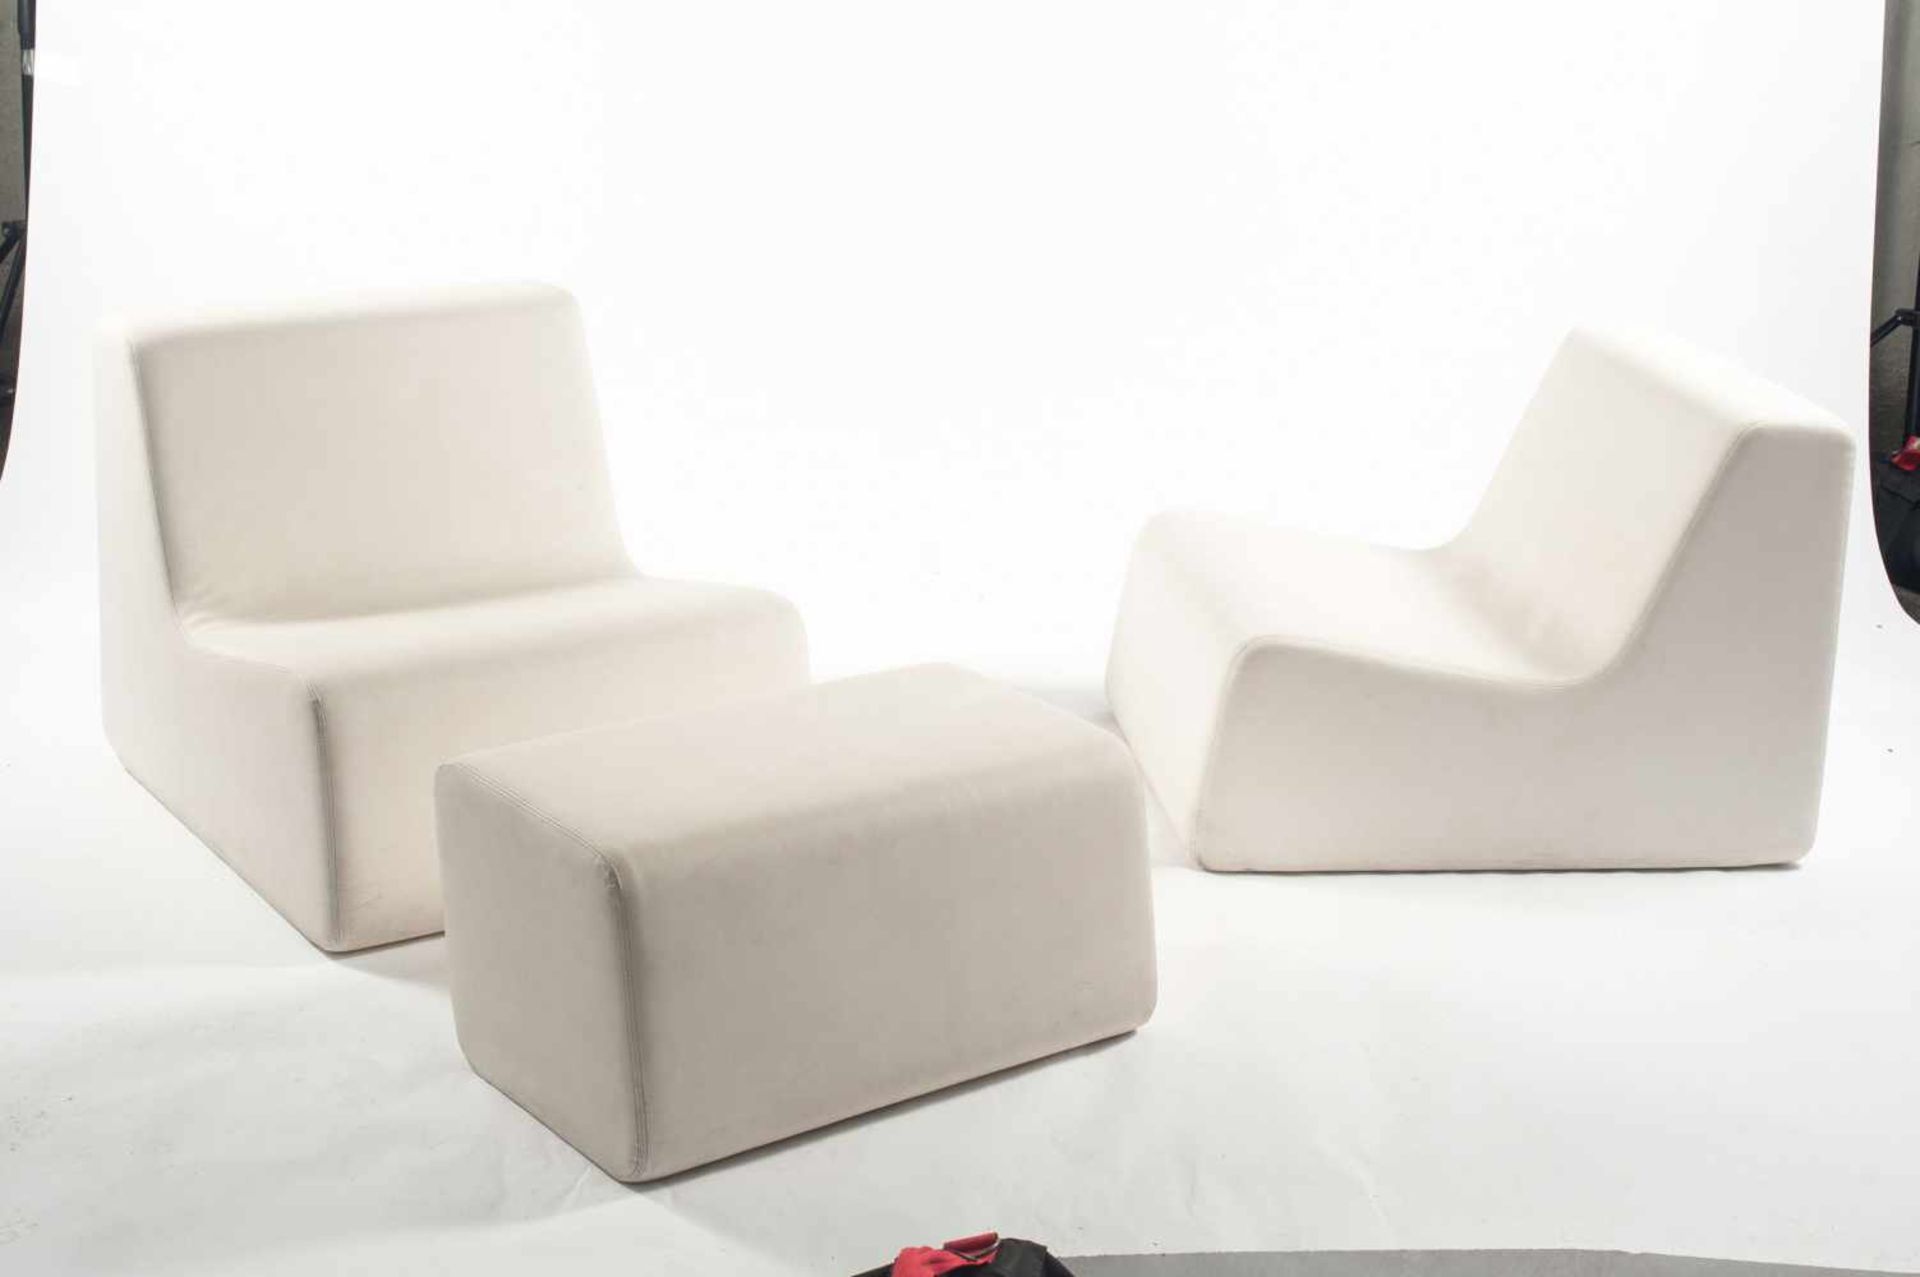 Spazia, Superieur, Schweiz Zwei Sessel, ein Ottoman 'Chair', um 2010 Sessel: H. 63,5 x 70 x 87 cm; - Image 2 of 2